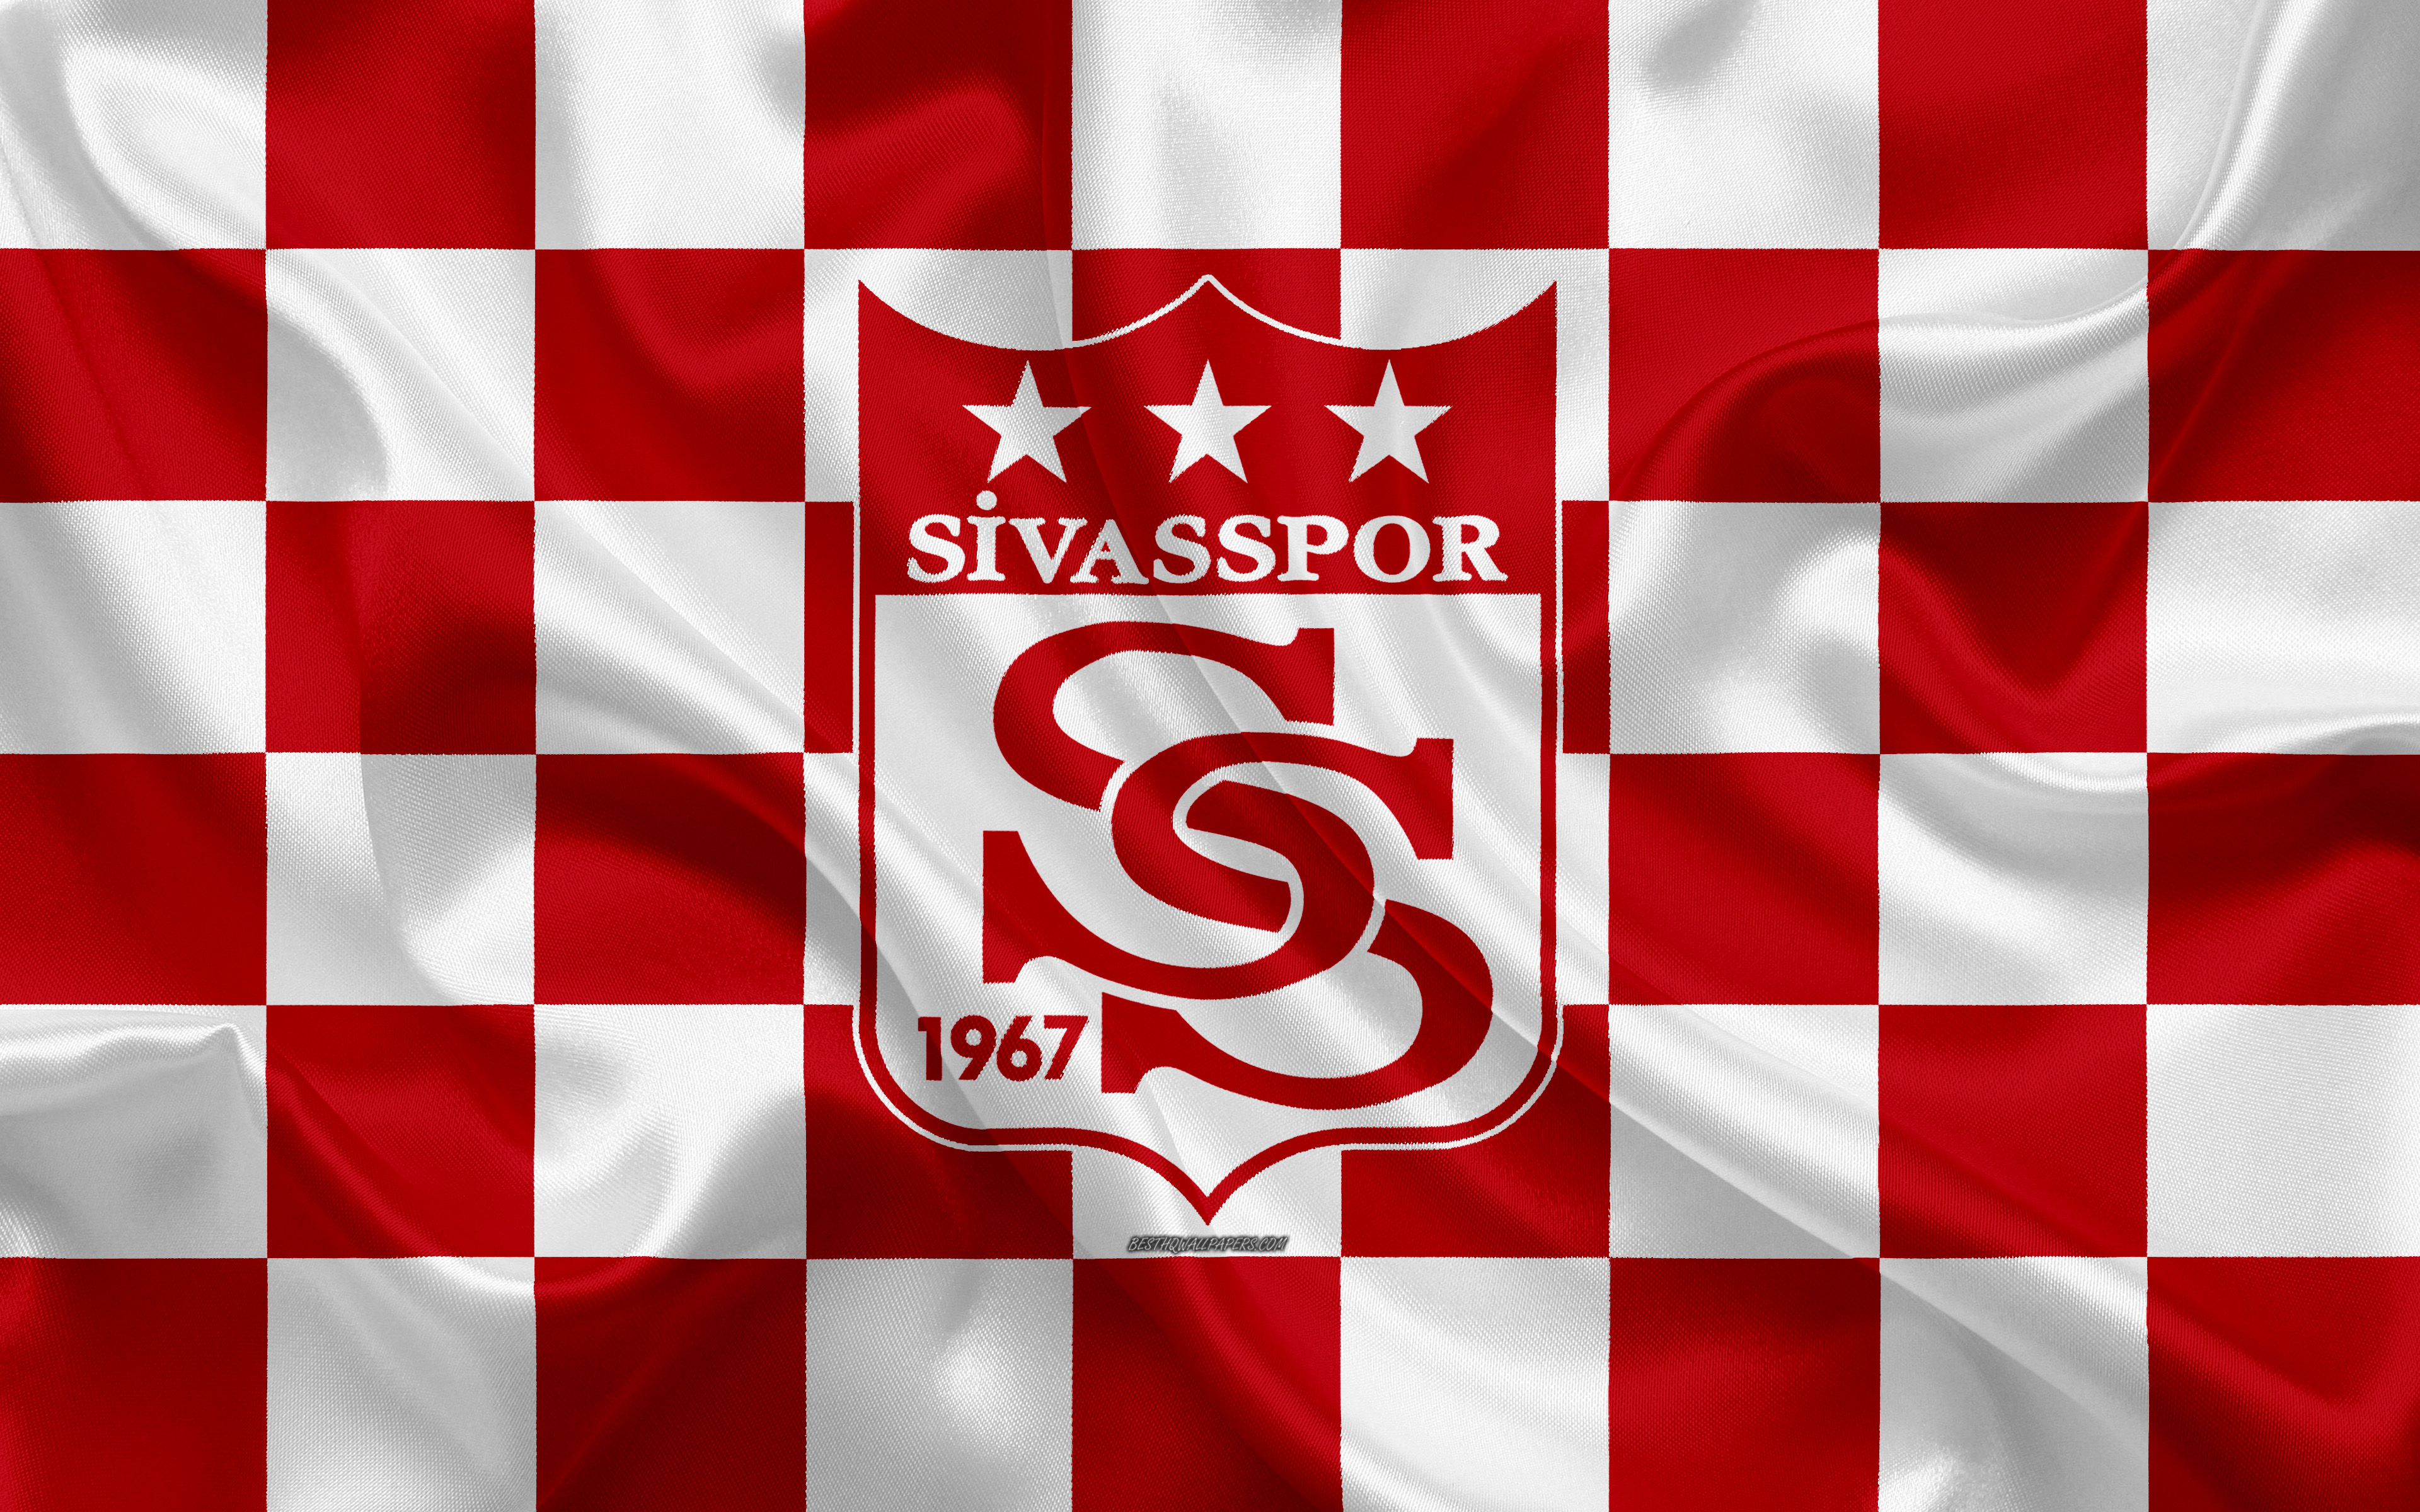 Sivasspor Wallpapers